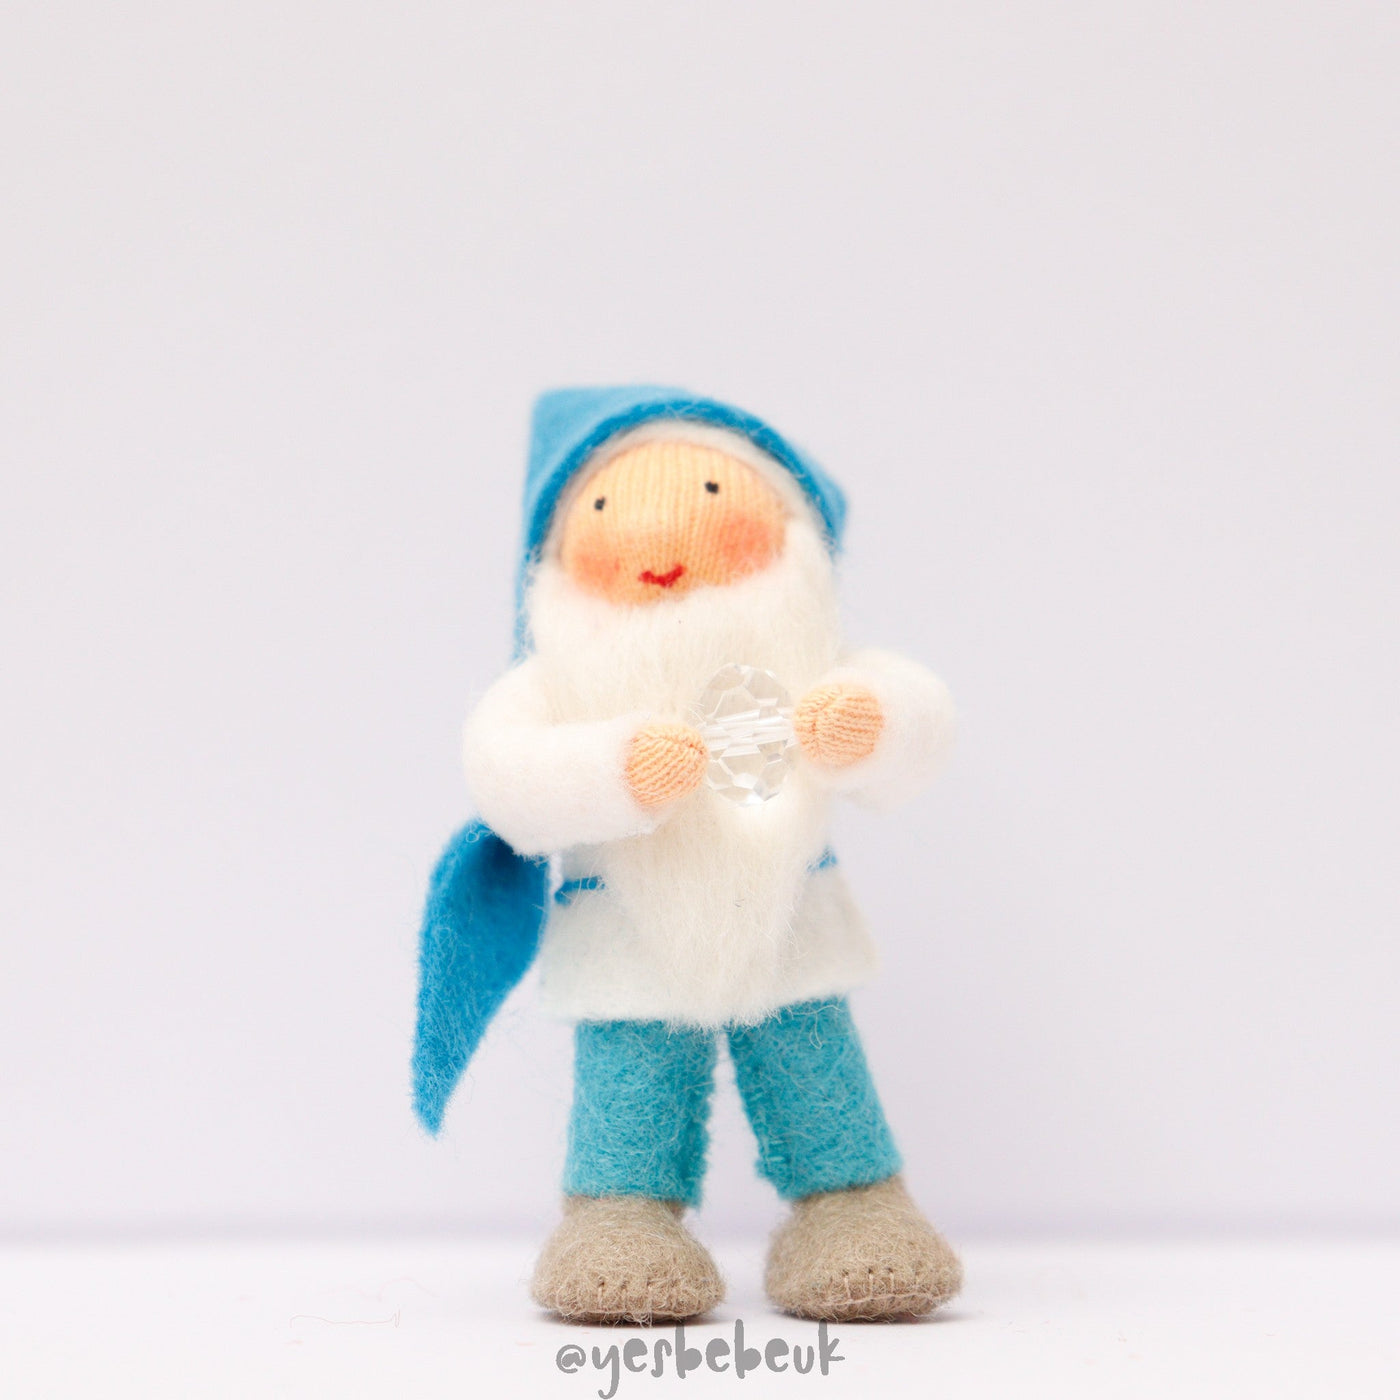 Pocket Dwarf with Crystal Doll